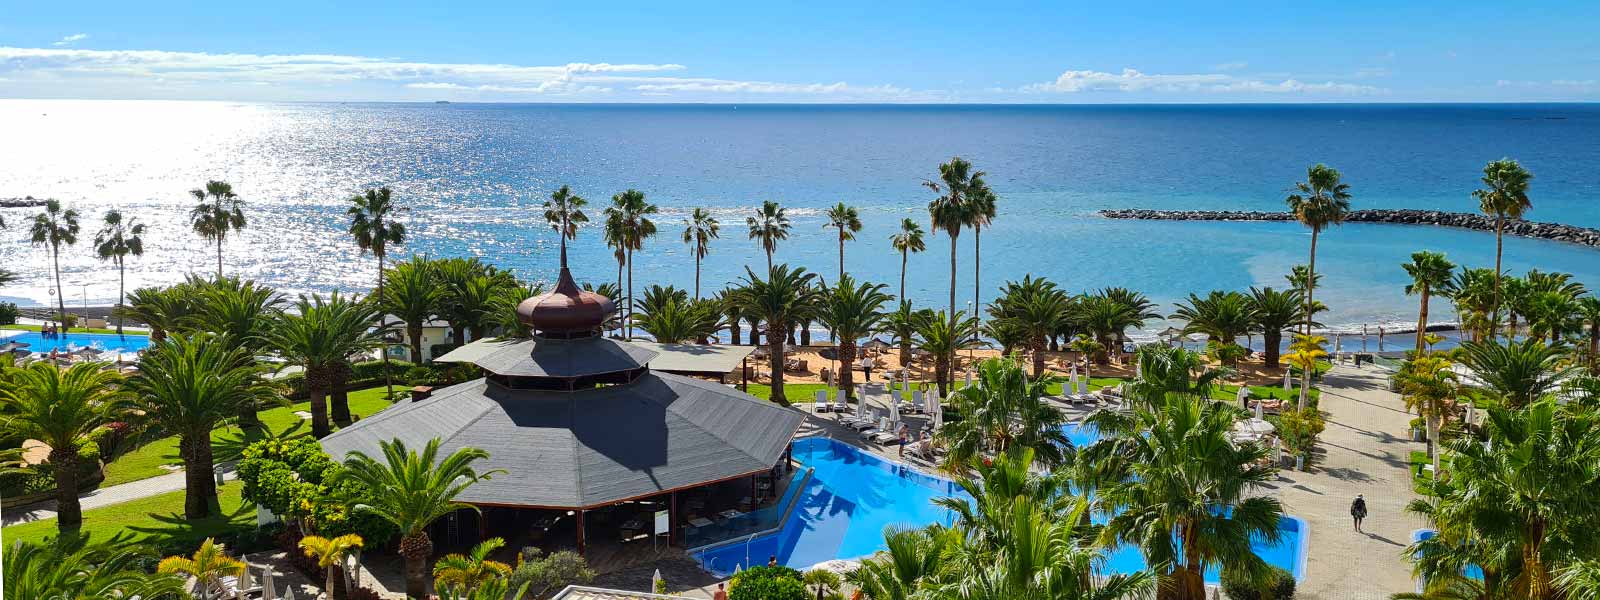 De tuin met zwembad aan zee van RIU Palace Tenerife